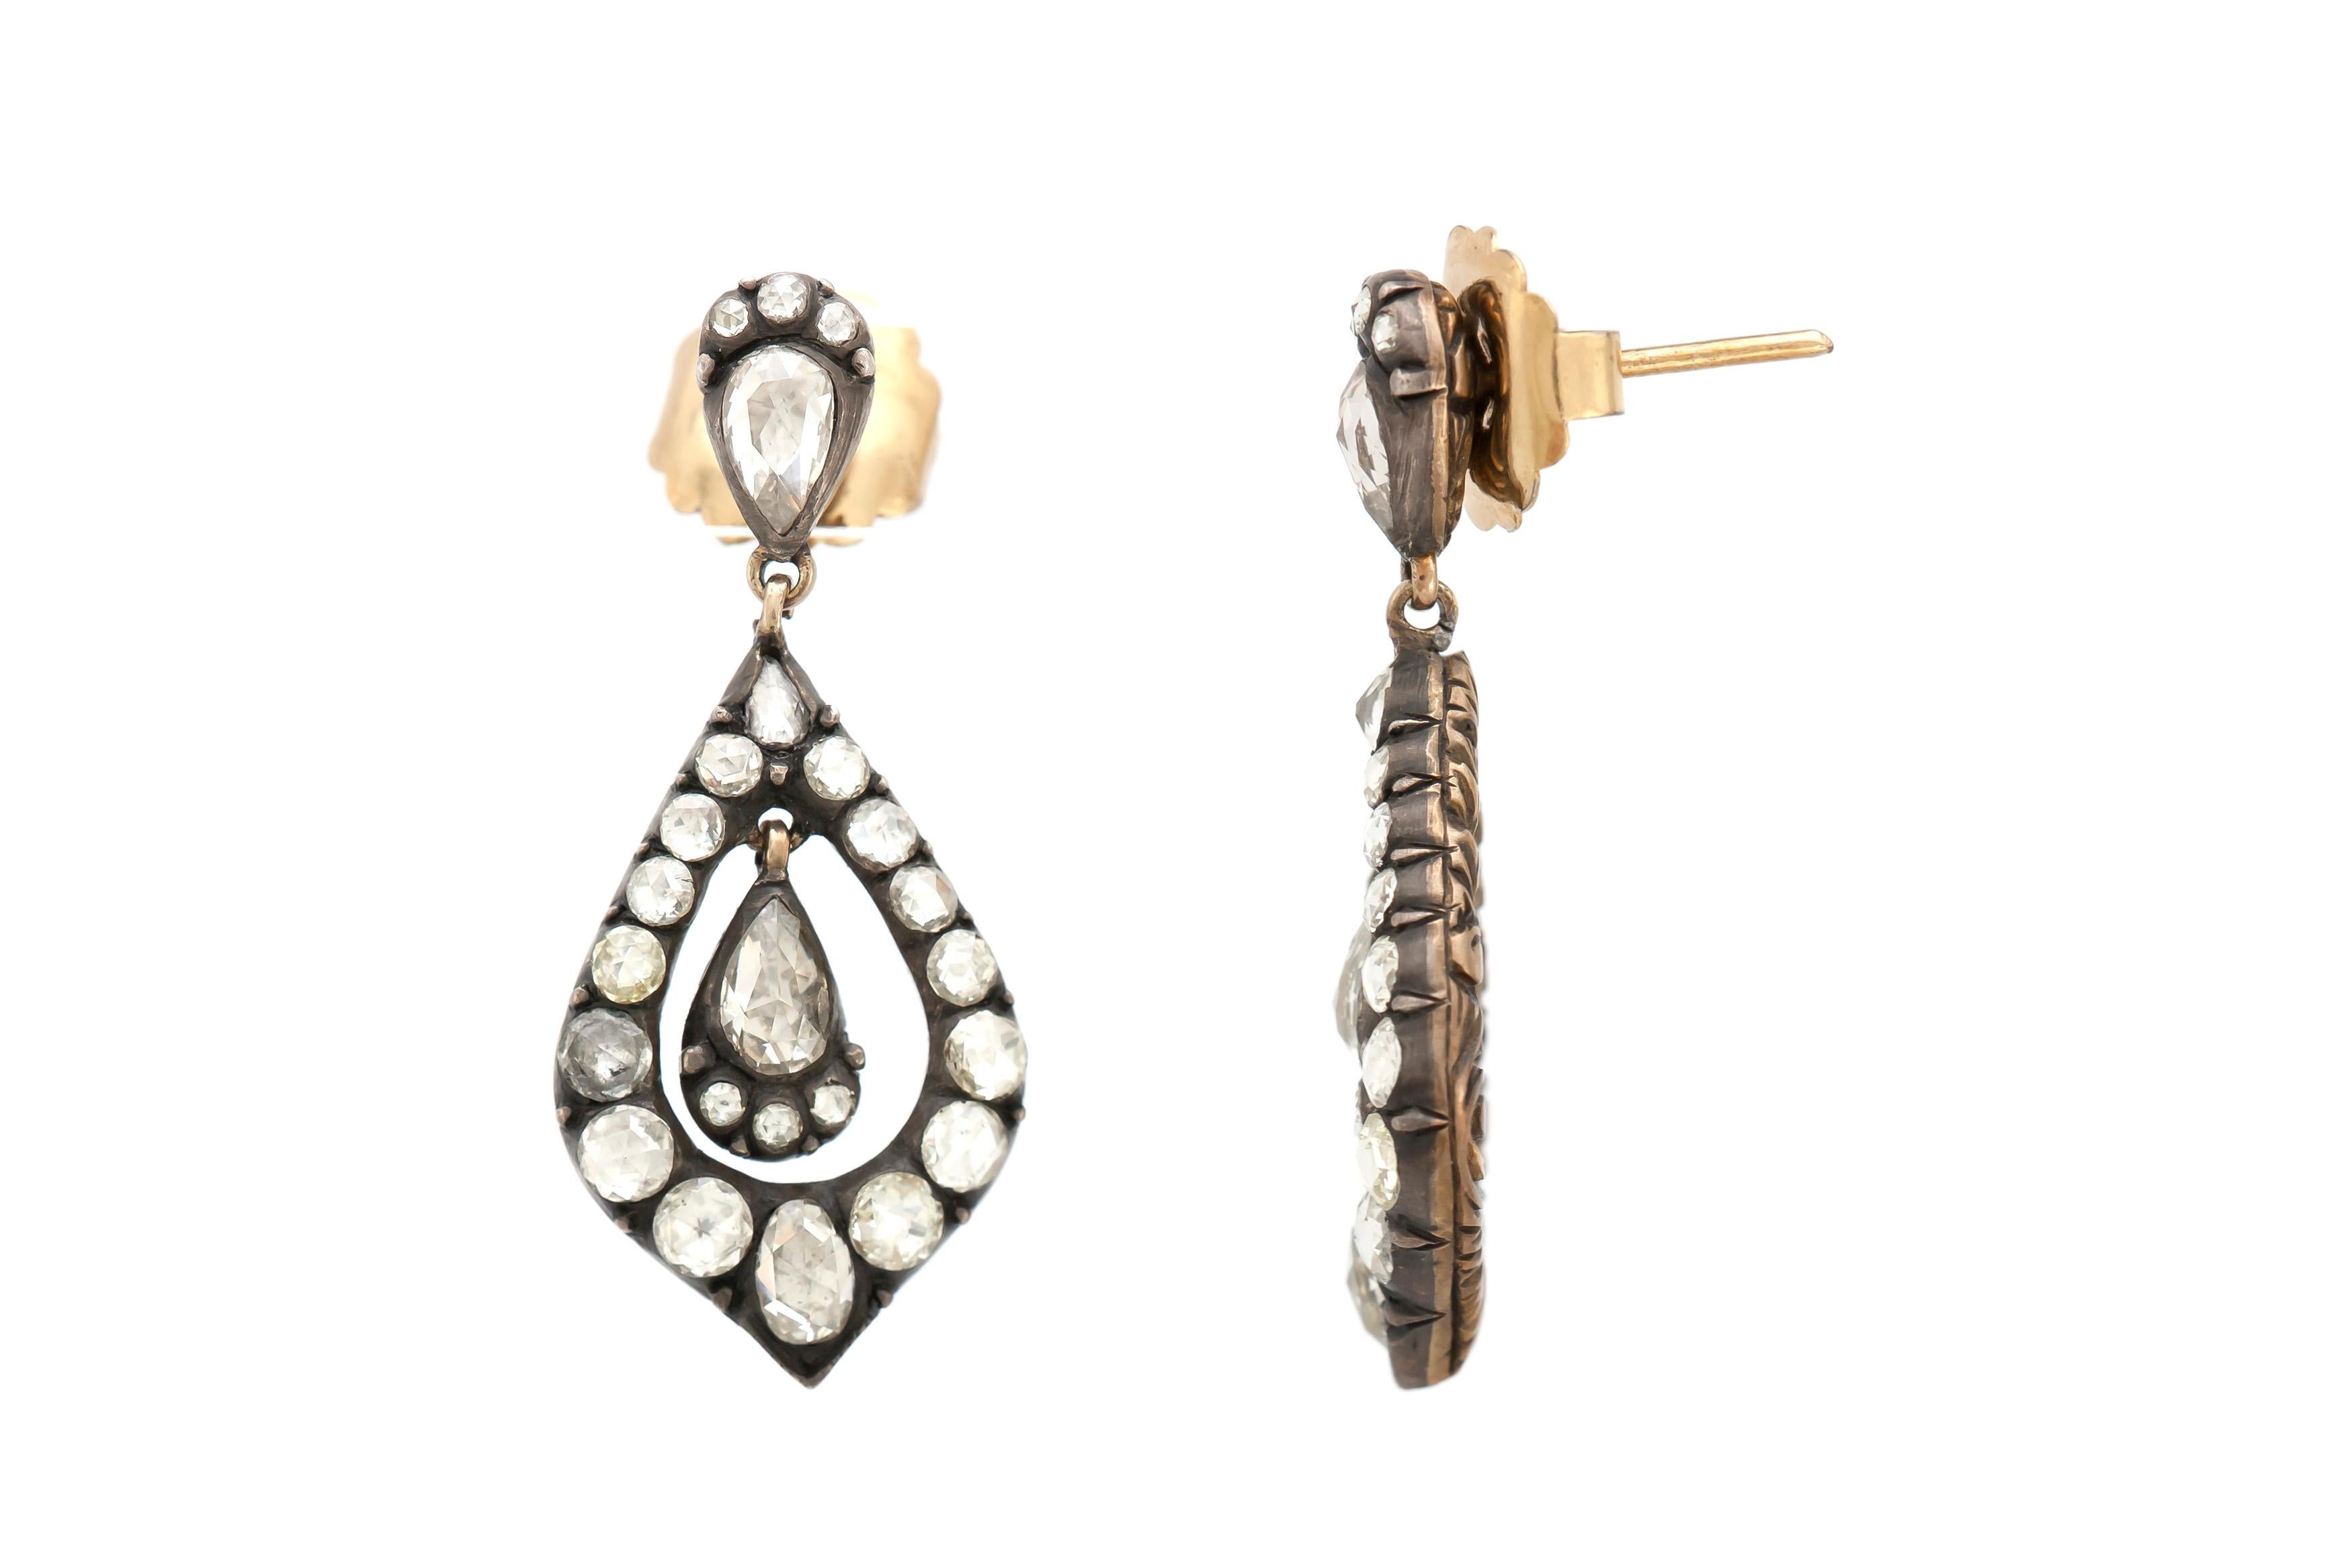 Die Ohrringe sind fein in Silber und Gold mit schönen Diamanten mit einem Gesamtgewicht von 3,71 Karat gefertigt.